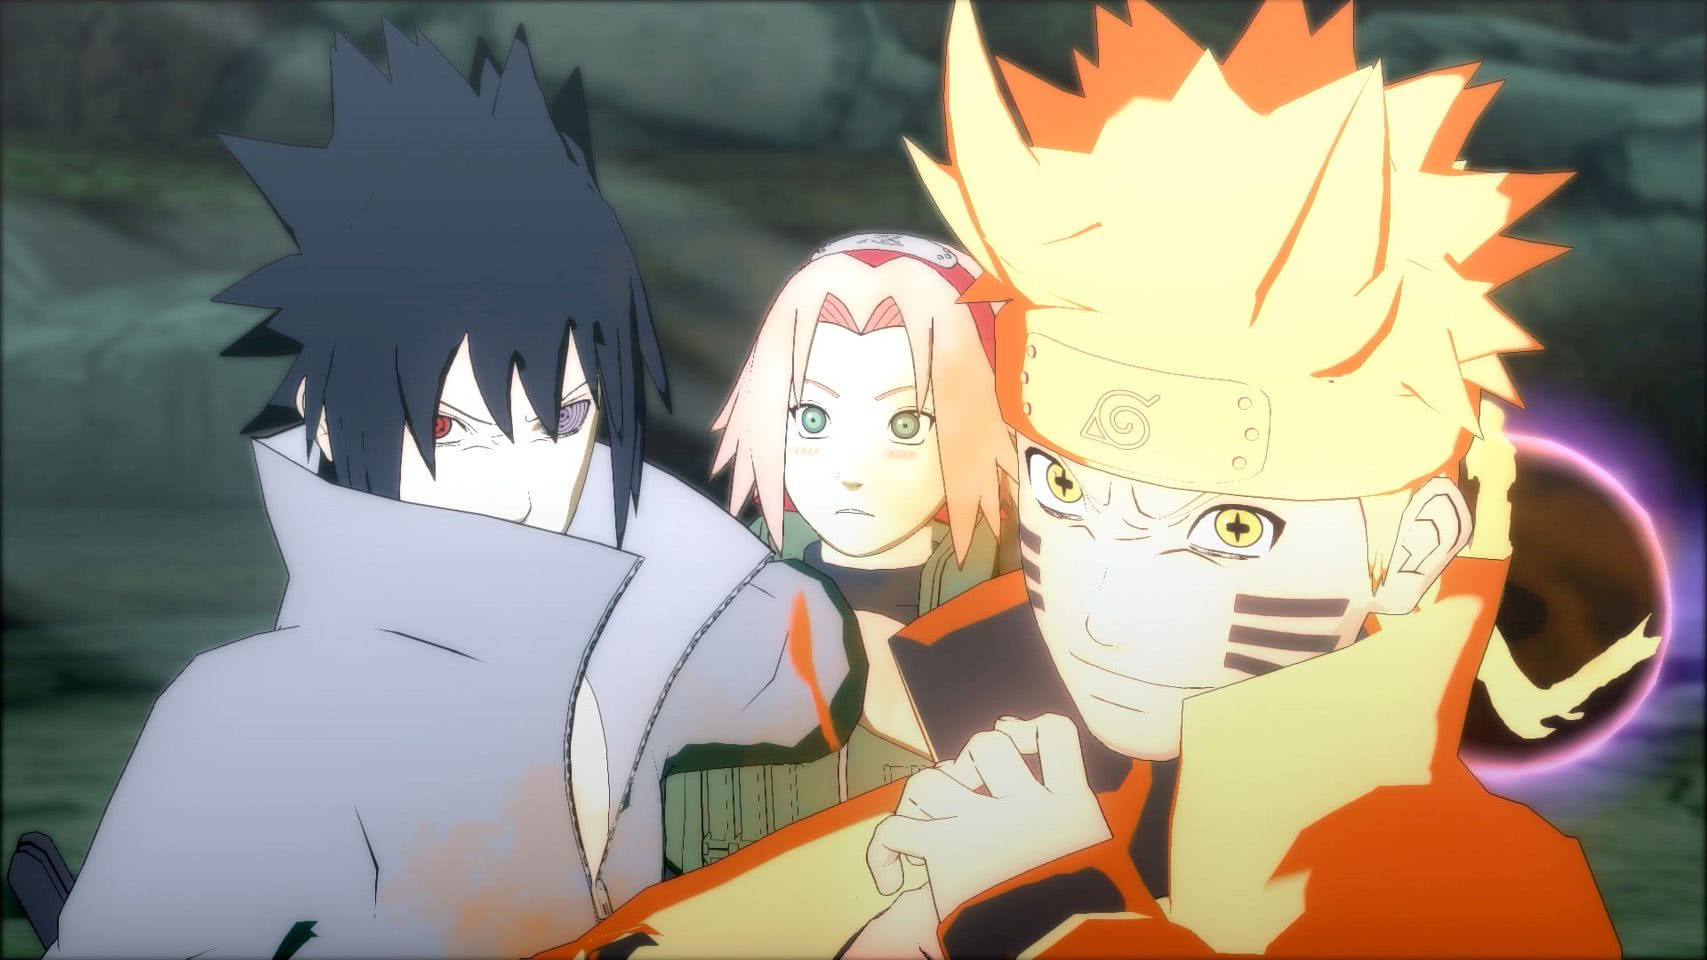 Fillers em Naruto Shippuden: saiba todos os fillers do anime (e quais ver)!